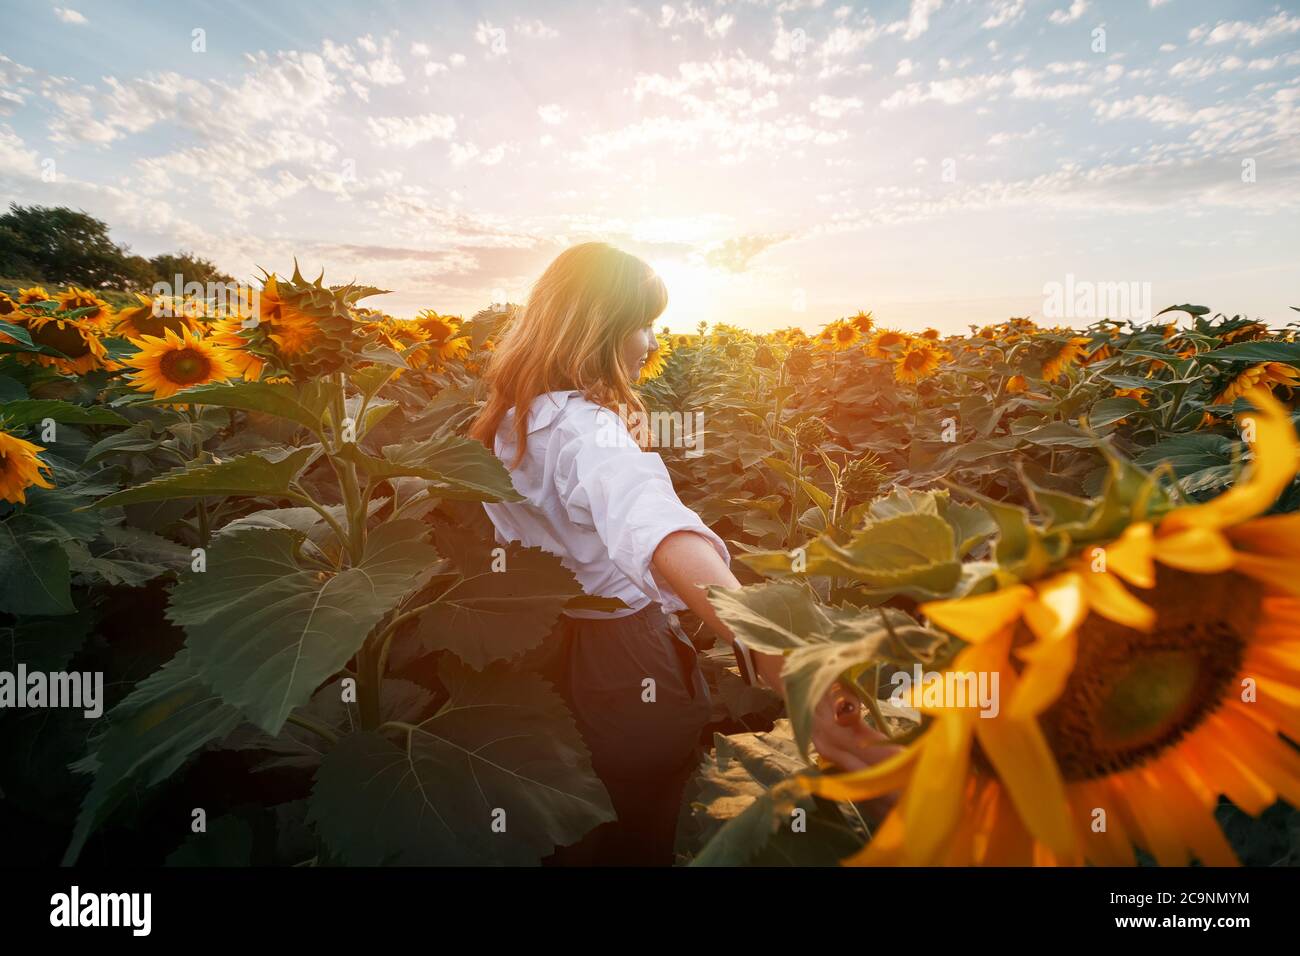 Une fille aux cheveux rouges dans un champ de tournesols regarde le coucher du soleil. Coucher de soleil, coucher de soleil dans un champ de tournesols. Vue arrière d'une jeune fille au milieu Banque D'Images